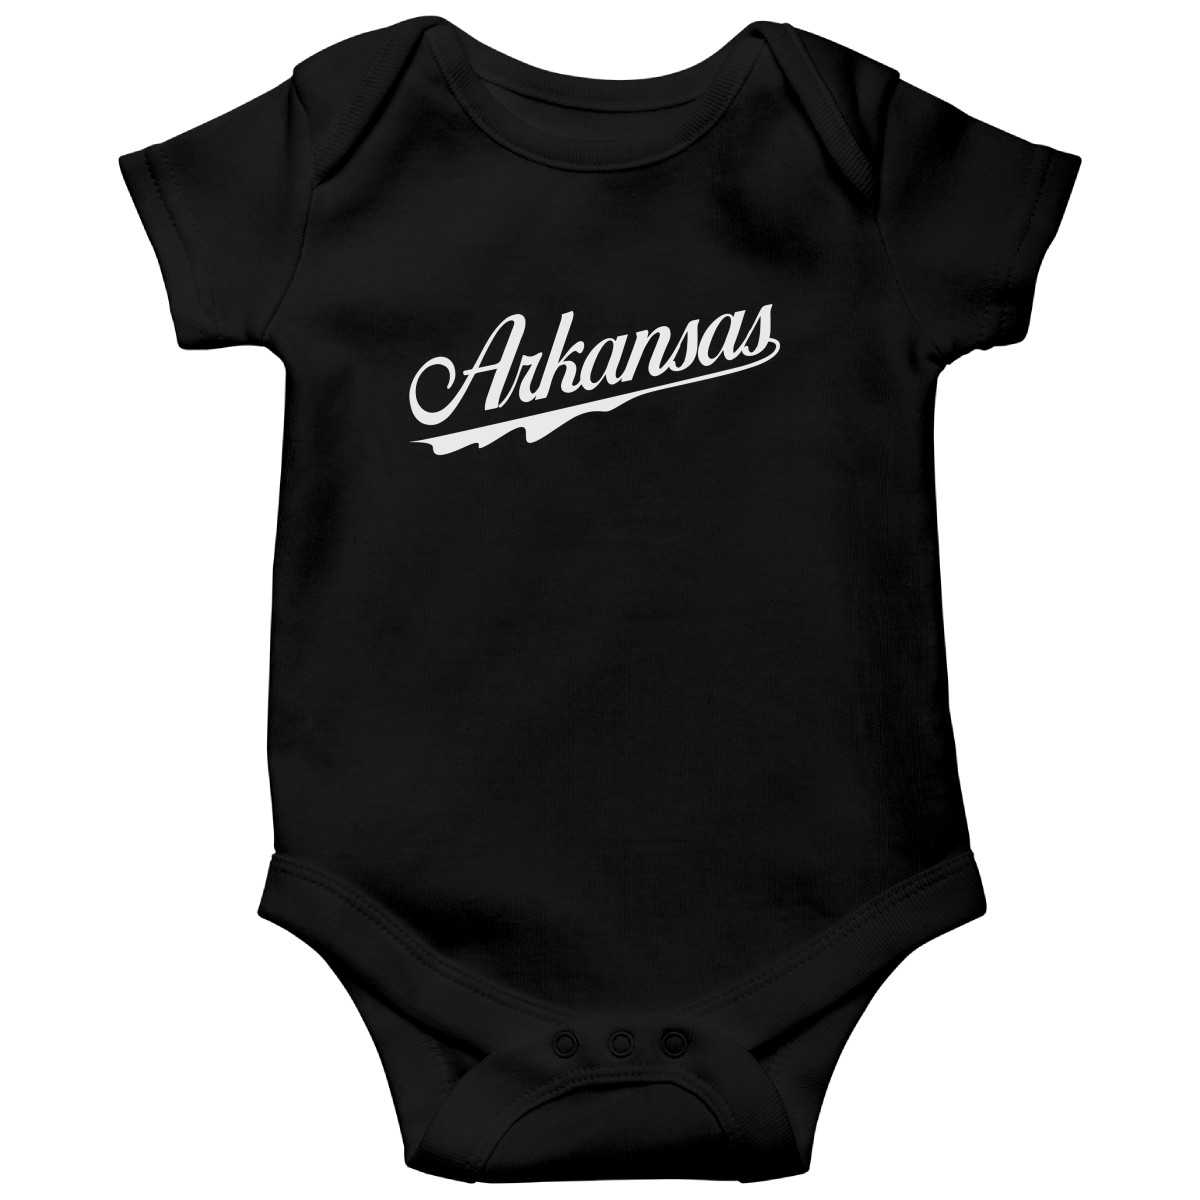 Arkansas Baby Bodysuit | Black